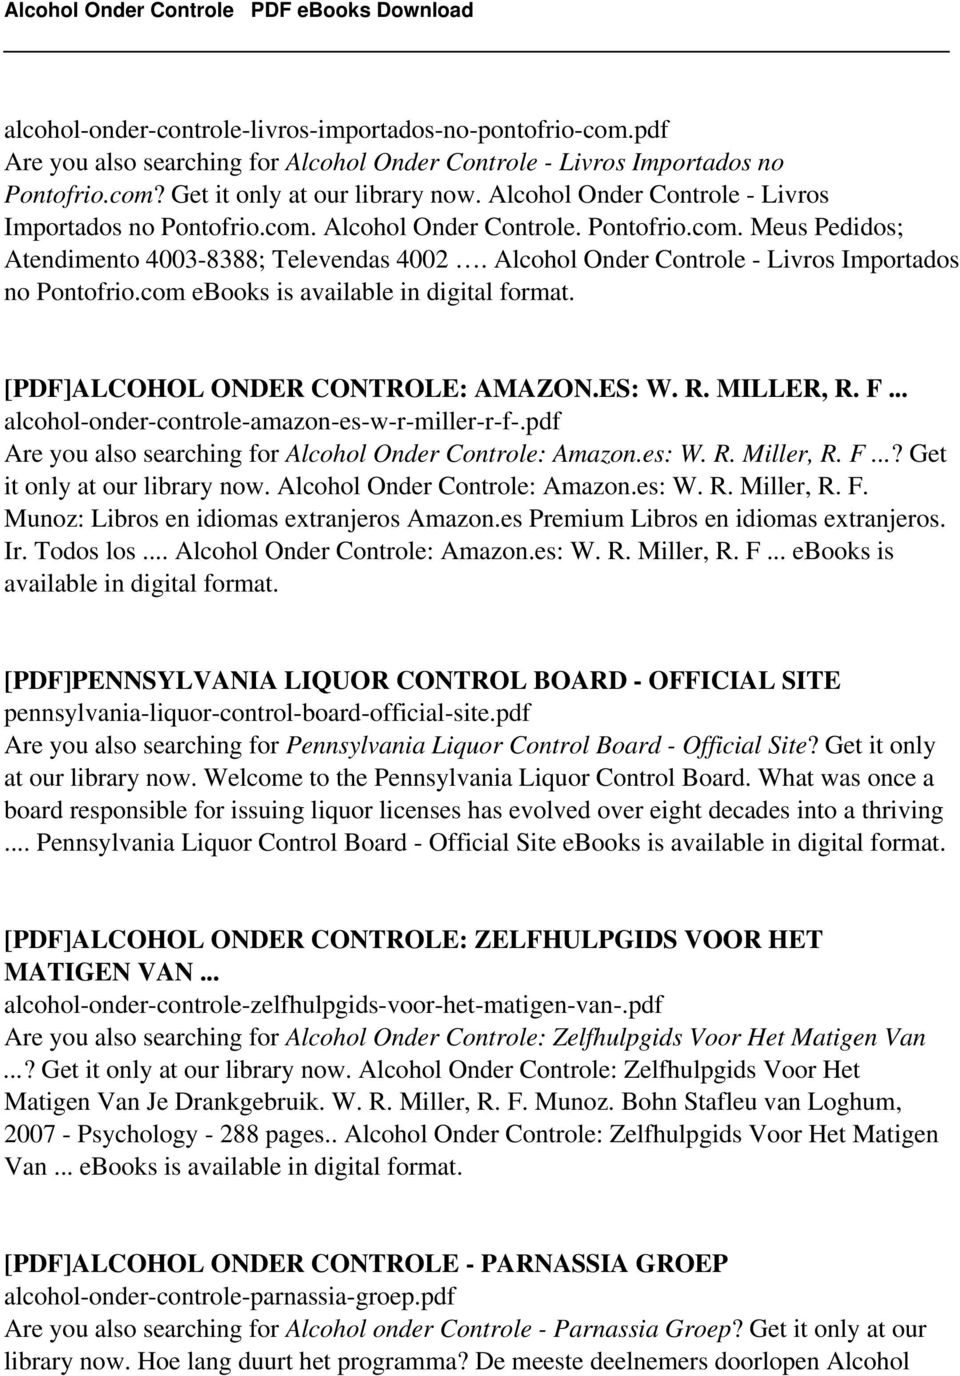 Alcohol Onder Controle - Livros Importados no Pontofrio.com ebooks is [PDF]ALCOHOL ONDER CONTROLE: AMAZON.ES: W. R. MILLER, R. F... alcohol-onder-controle-amazon-es-w-r-miller-r-f-.